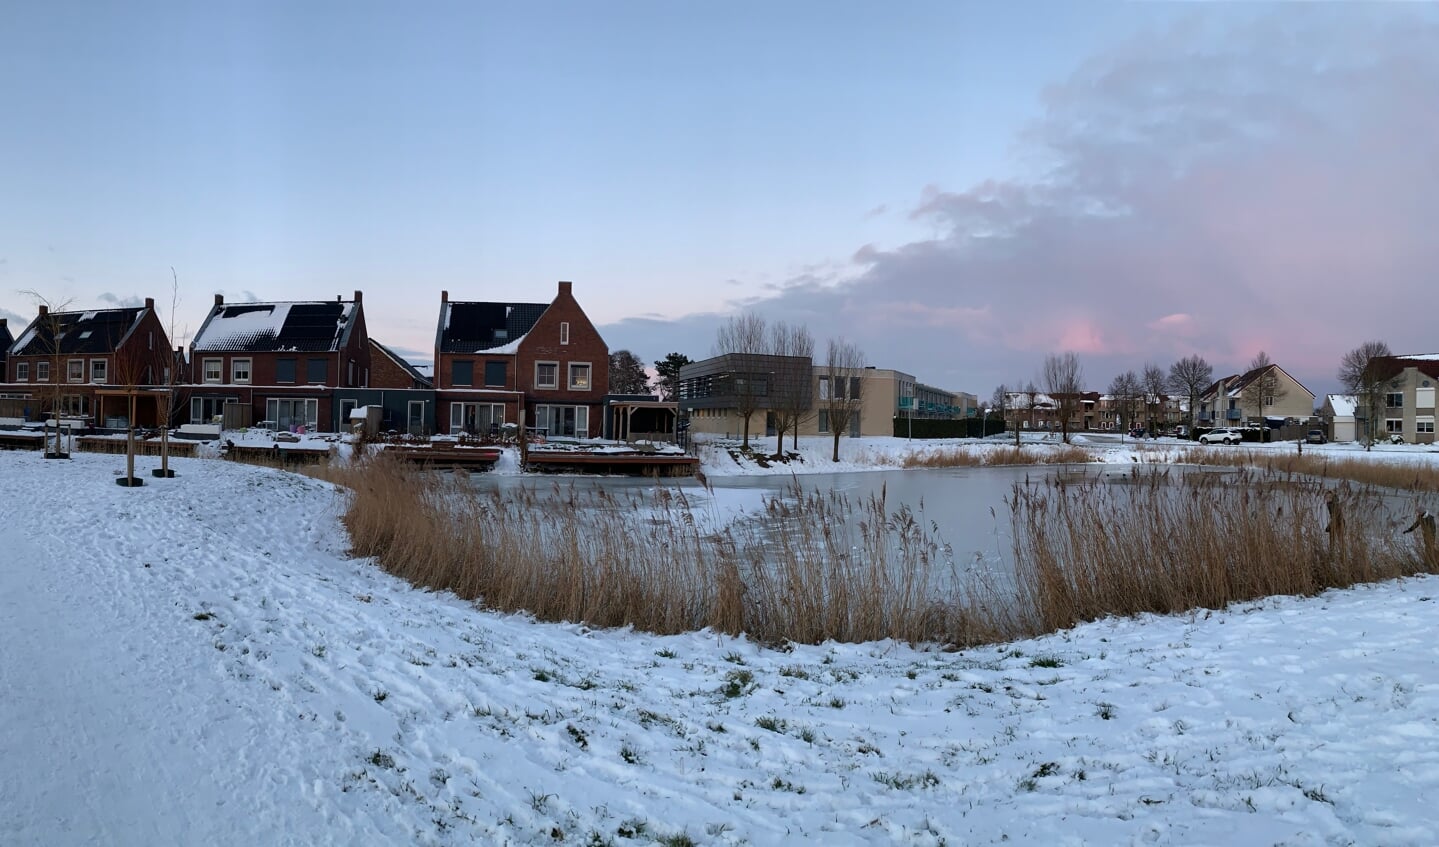 Gisteren hebben wij een prachtige panorama gemaakt van het dicht gevroren water aan de Boomgaard te Nieuwendijk met wat schaatsende kinderen.